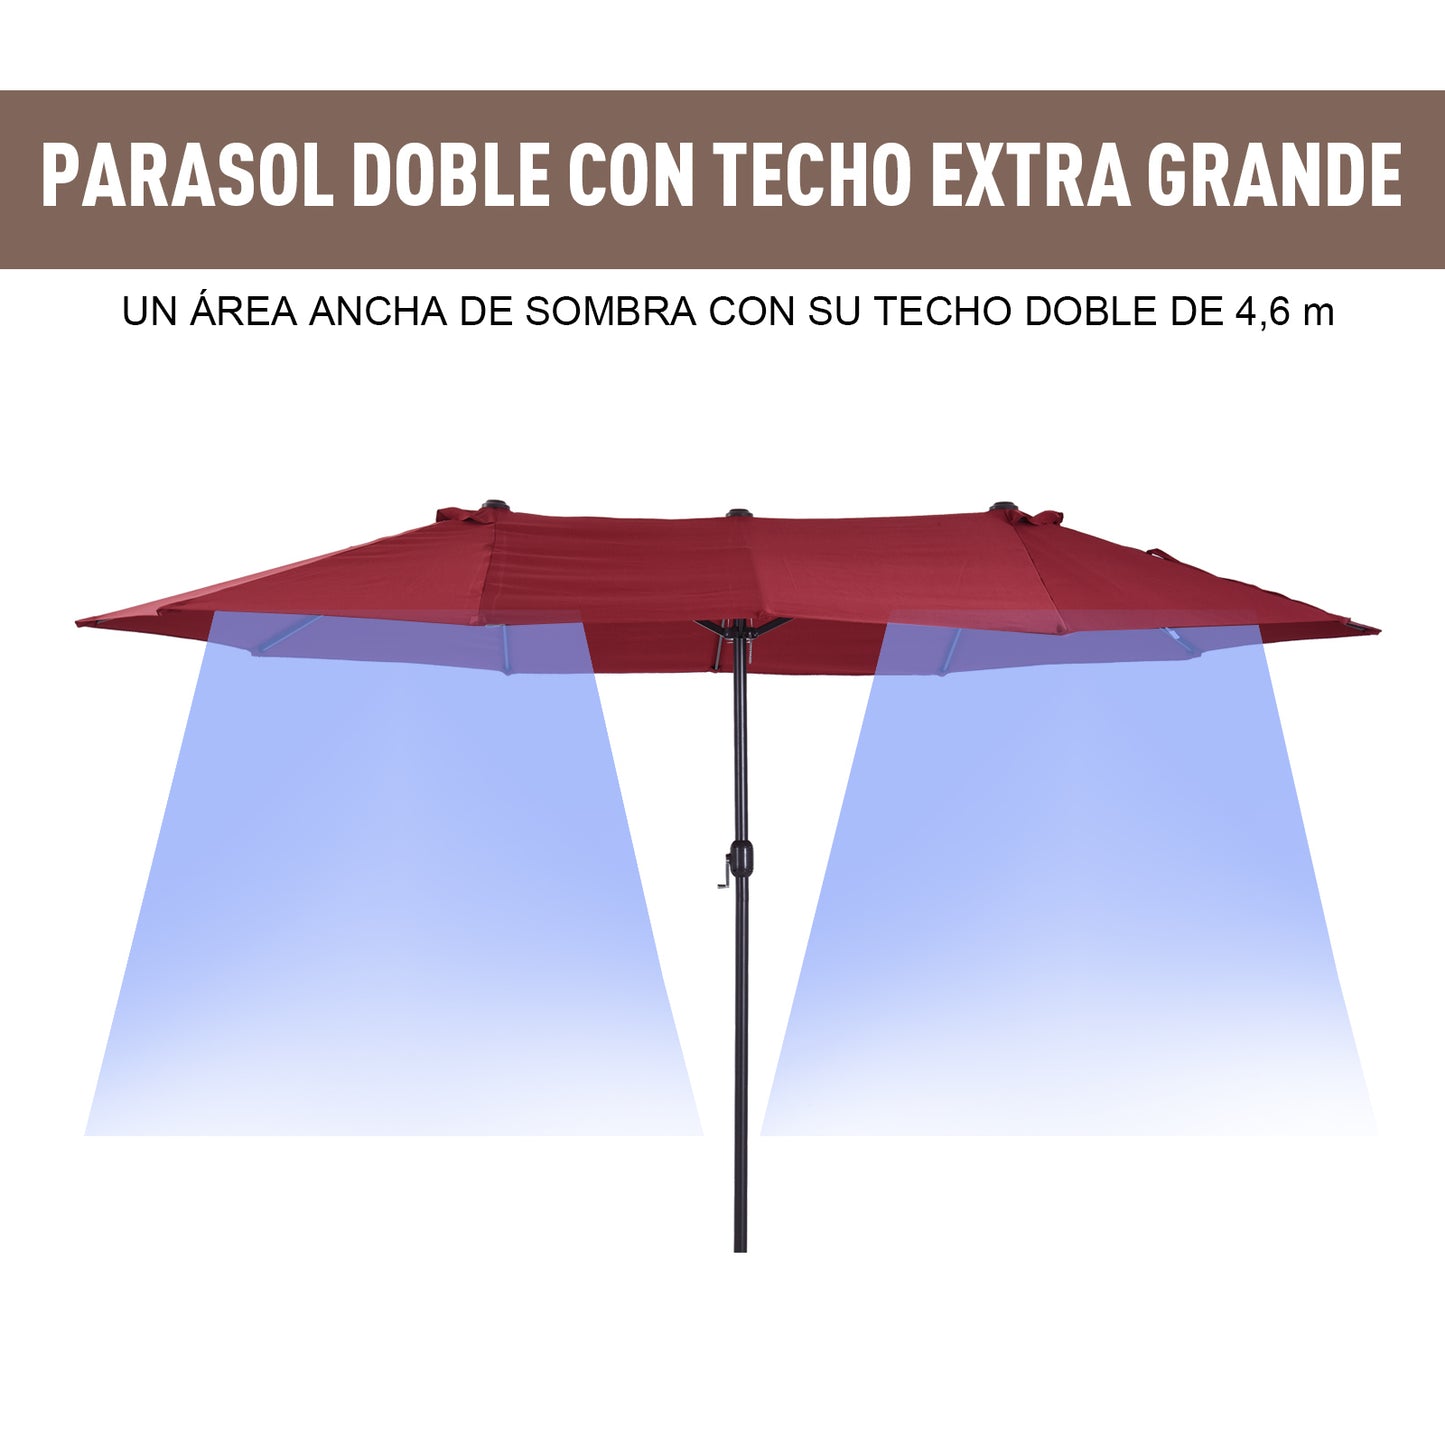 Outsunny Sombrilla Doble Parasol Grande 4.6x2.7m Sombrilla Jardín Patio con Manivela Manual Resistente al Agua y Protección Solar para Terraza Playa Piscina Rojo